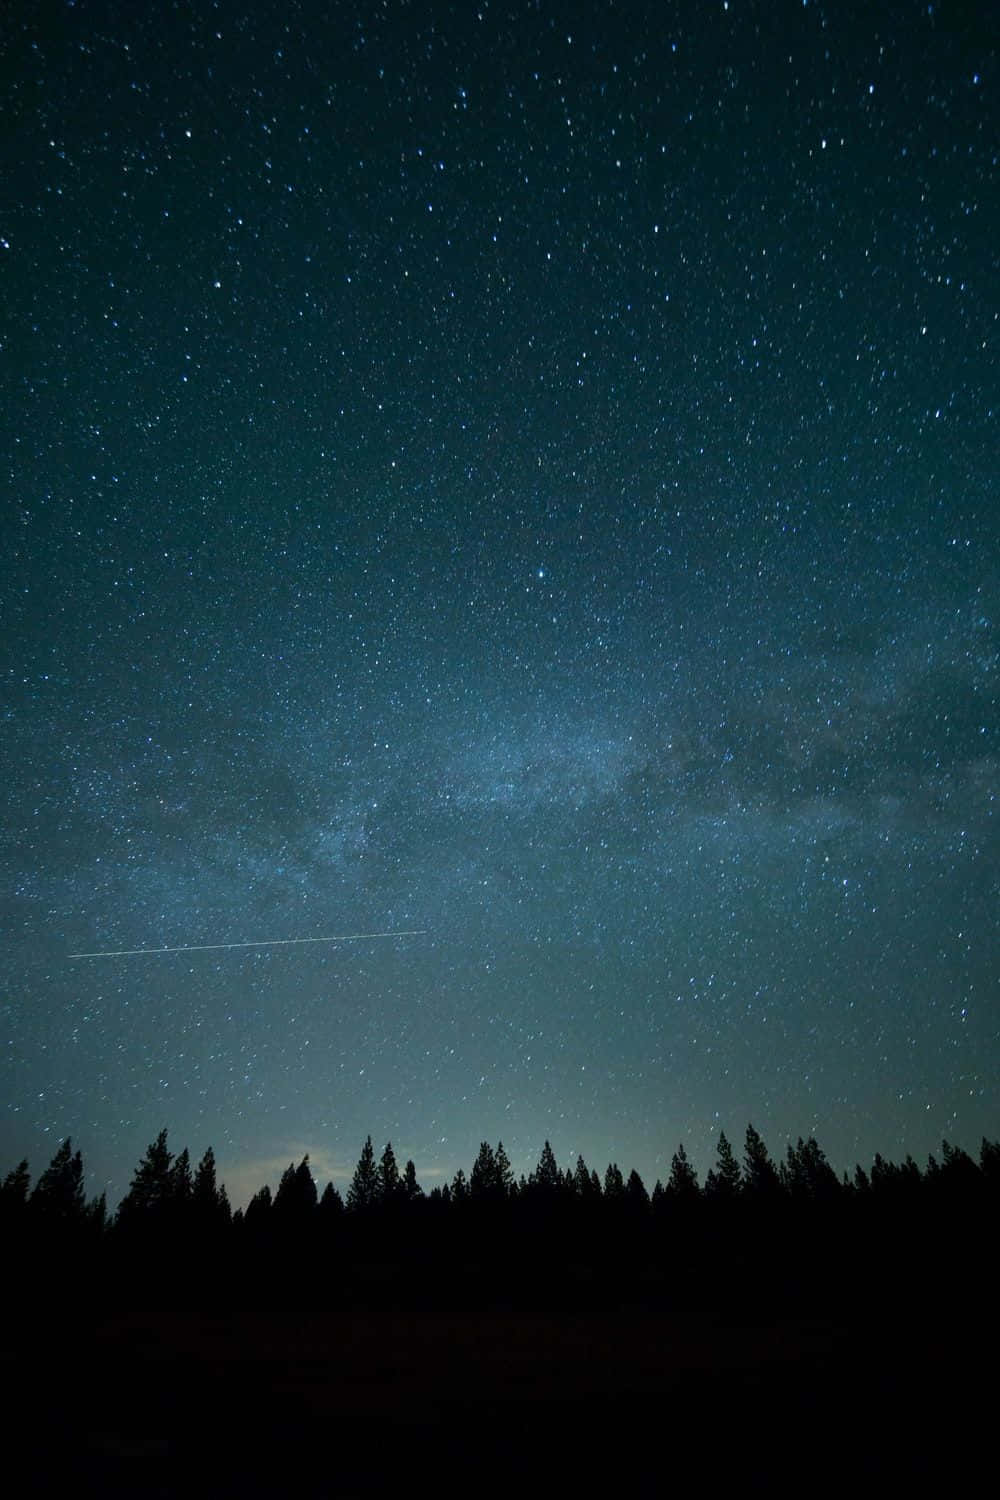 Et nattehimmel med stjerner og træer silhuetterede i månelyset. Wallpaper